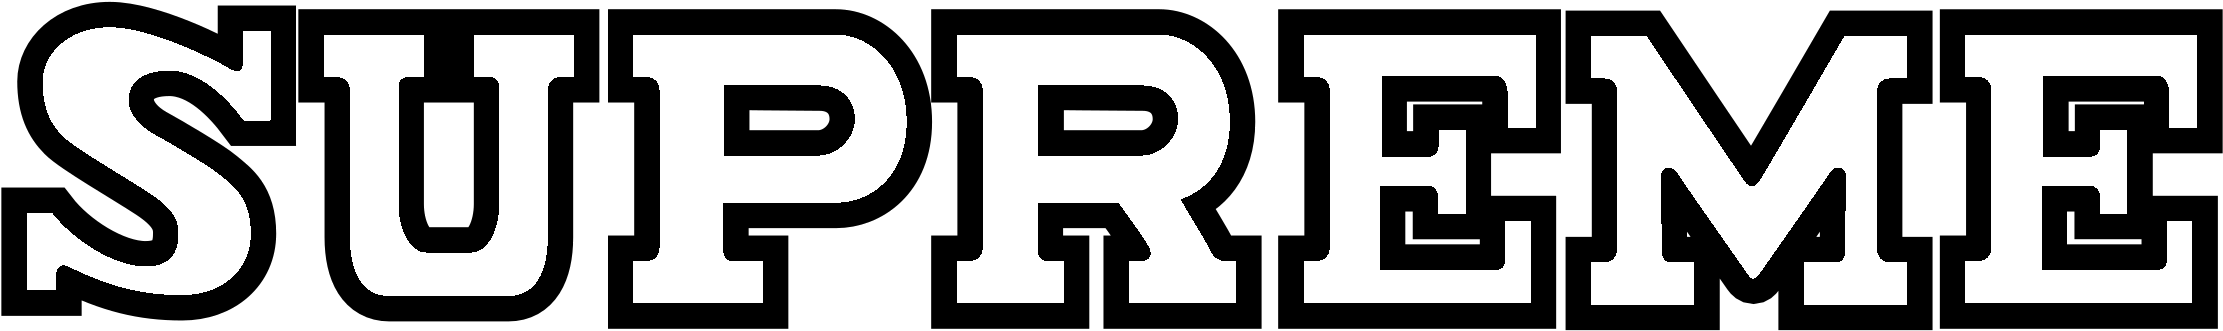 Black Supreme Logo PNG Transparent Image